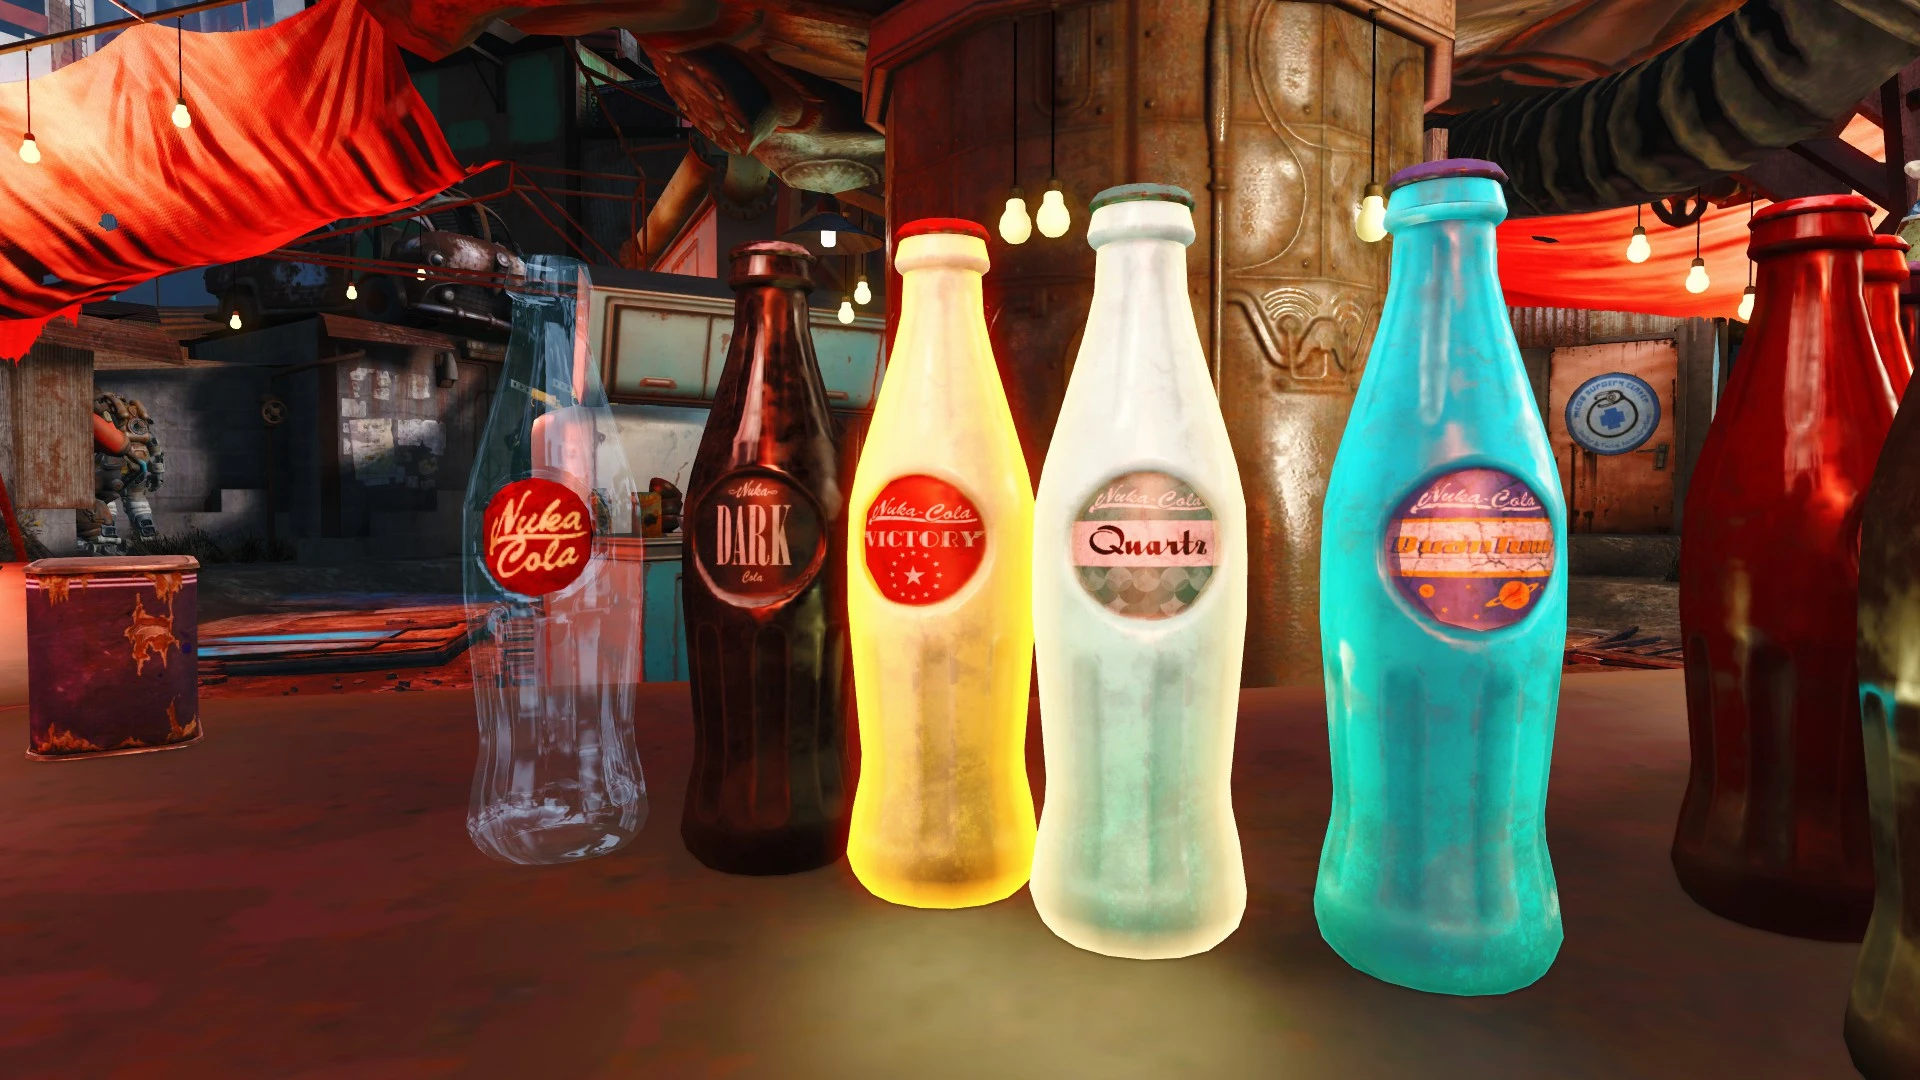 Fallout 4 nuka cola classic фото 67